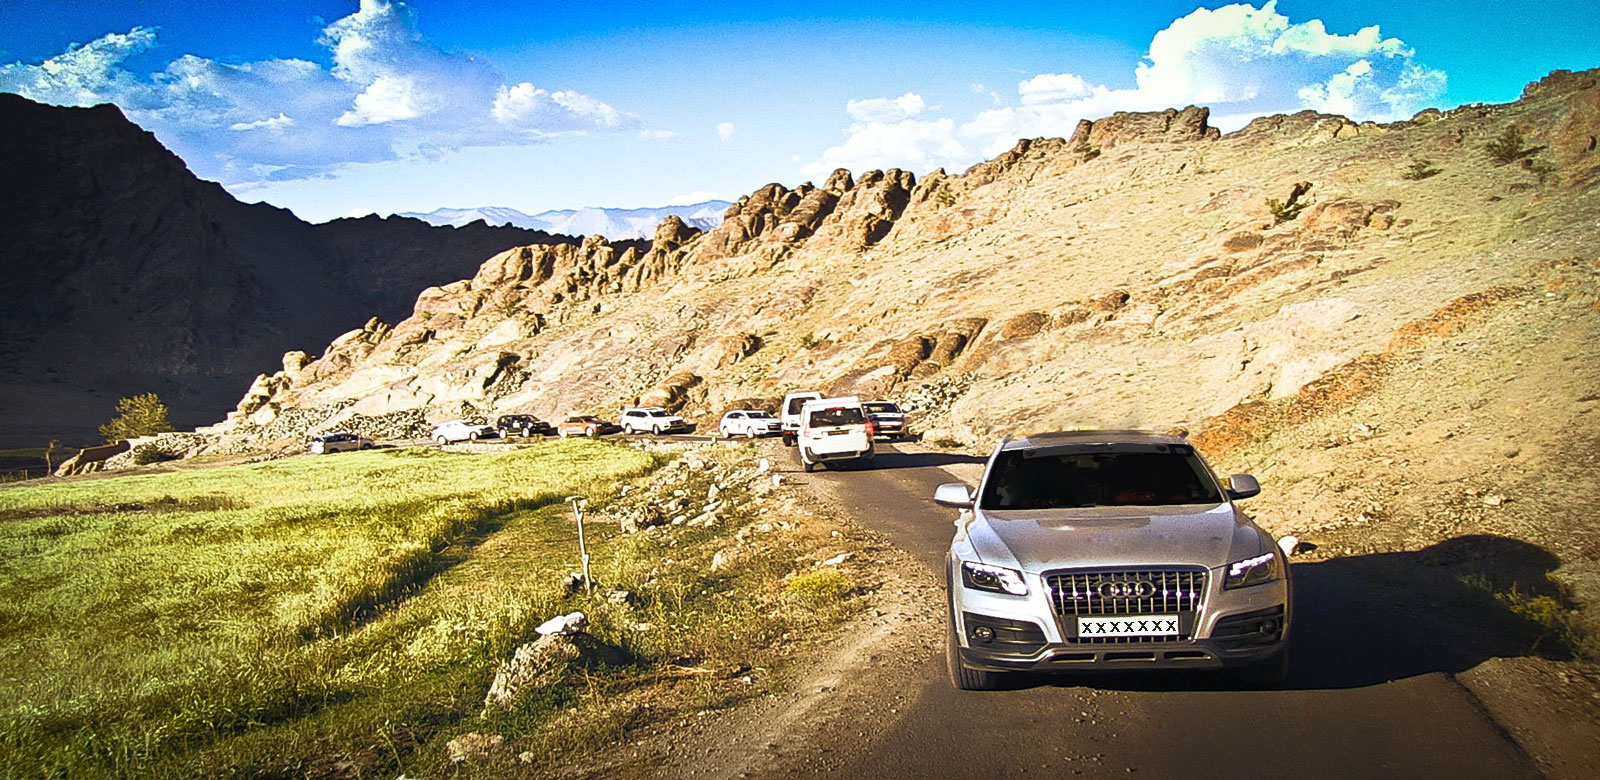 Special - Leh Ladakh Car Trip , HD Wallpaper & Backgrounds